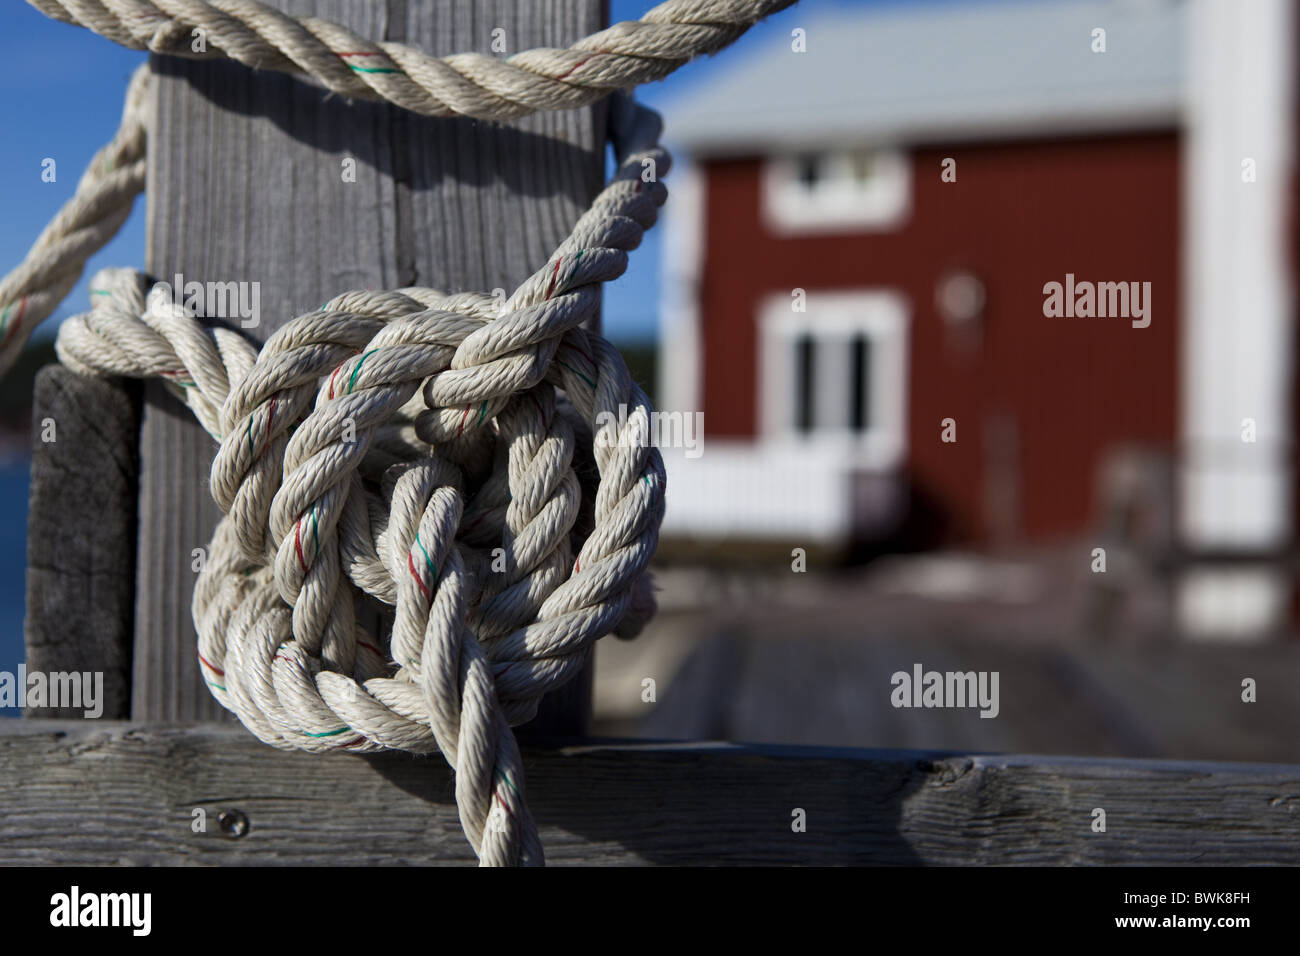 Une corde avec un noeud autour d'un poste à Norrfaellsviken, Hoega Kusten, Suède, Suède, Europe. Banque D'Images